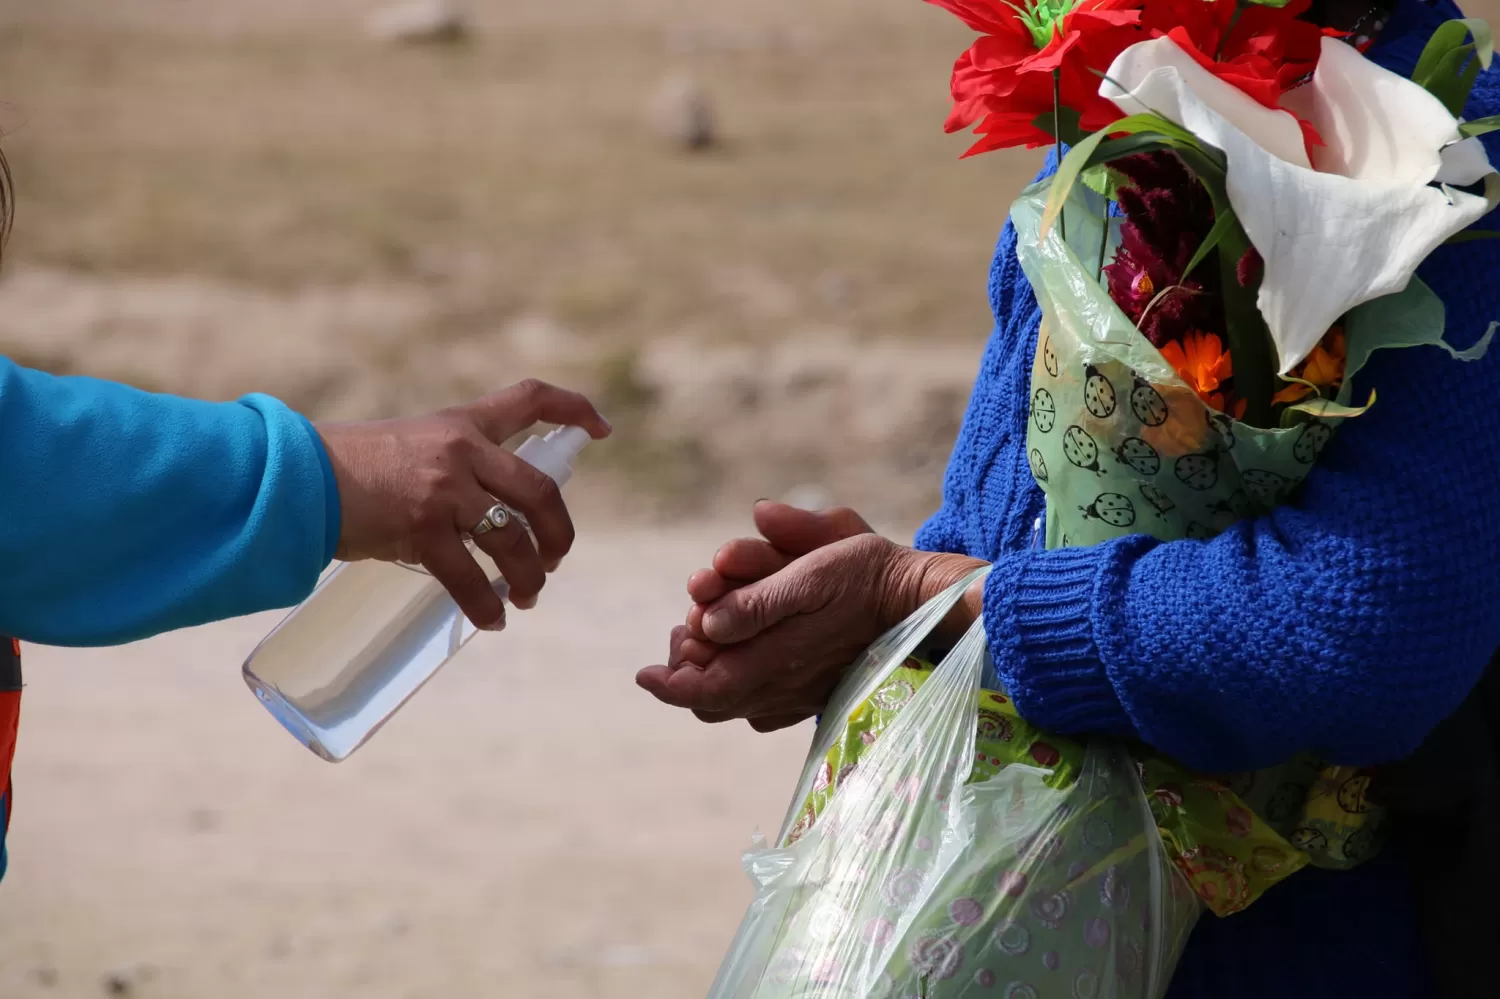 CAMPAÑA DE PREVENCIÓN. Una agente ayuda a una ciudadana a sanitizar sus manos. Foto de Facebook Municipalidad de Tafí del Valle